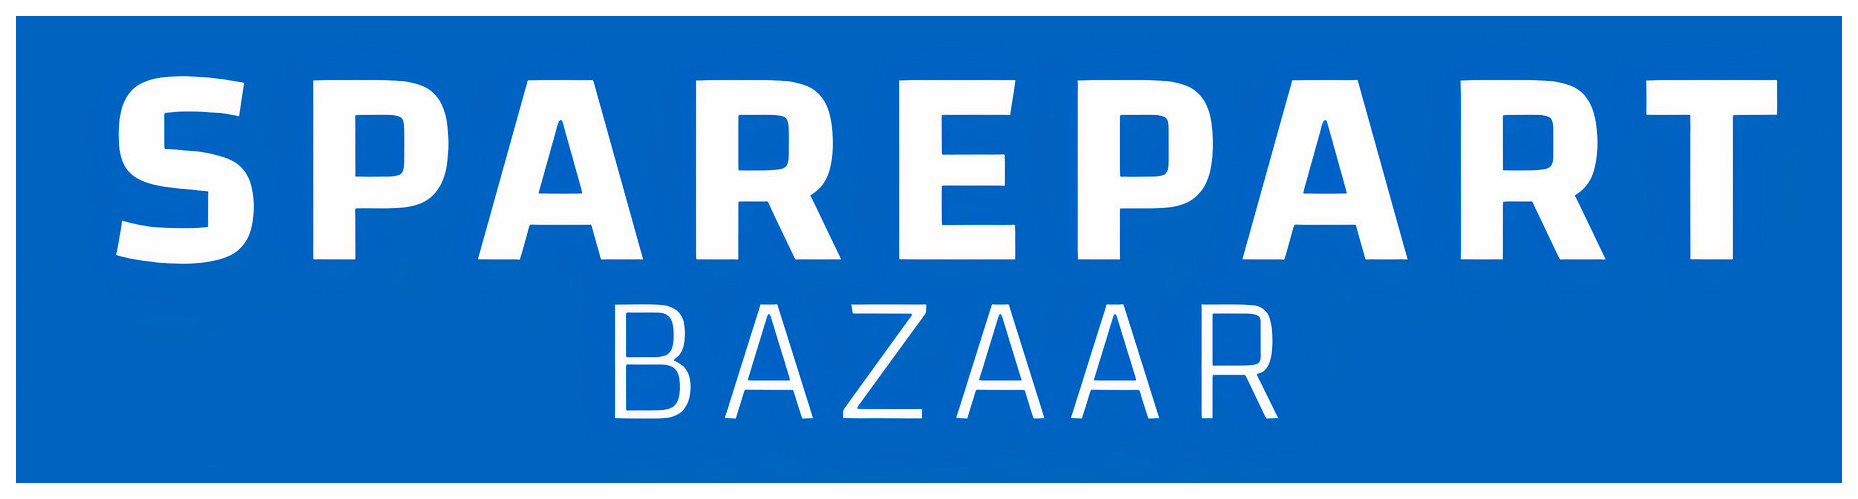 Sparepart Bazaar